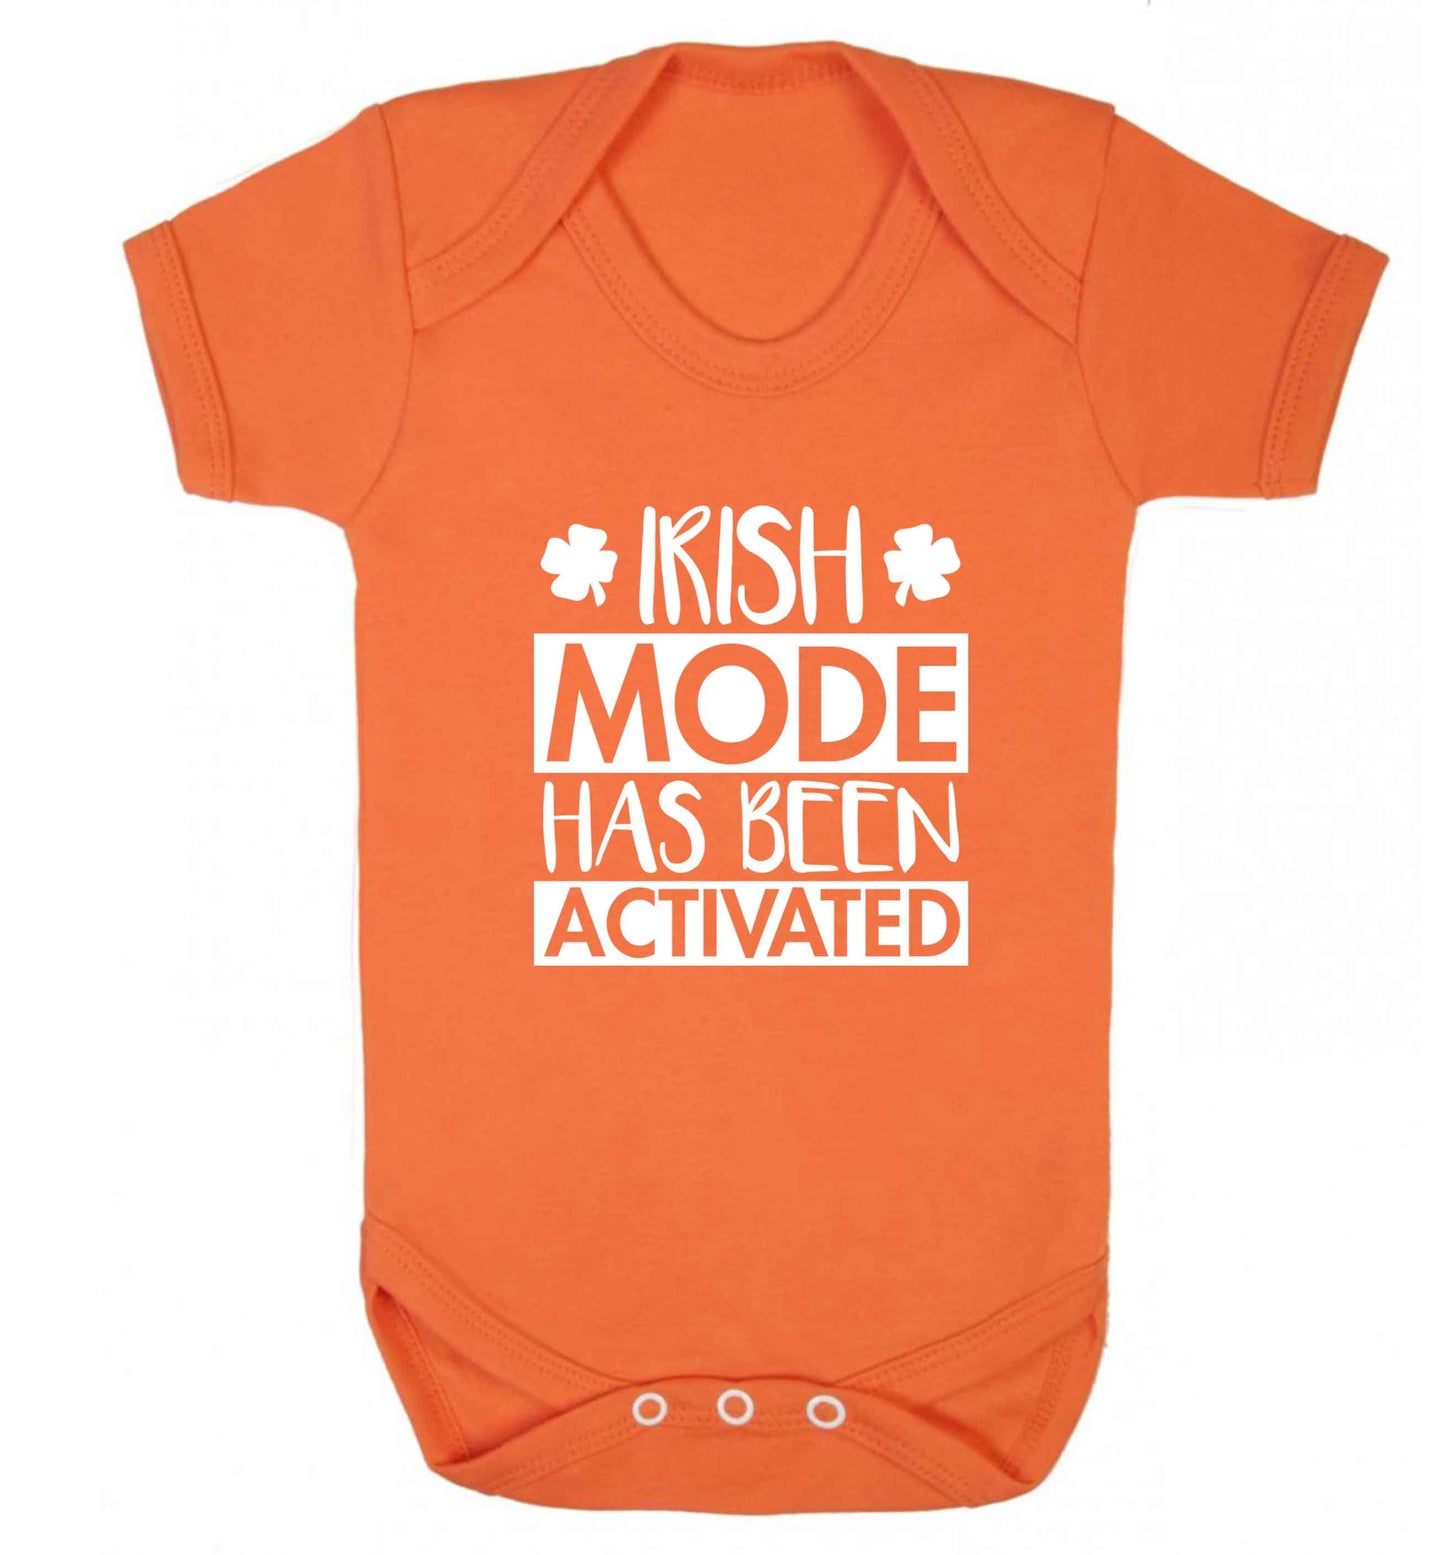 Irish mode has been activated baby vest orange 18-24 months